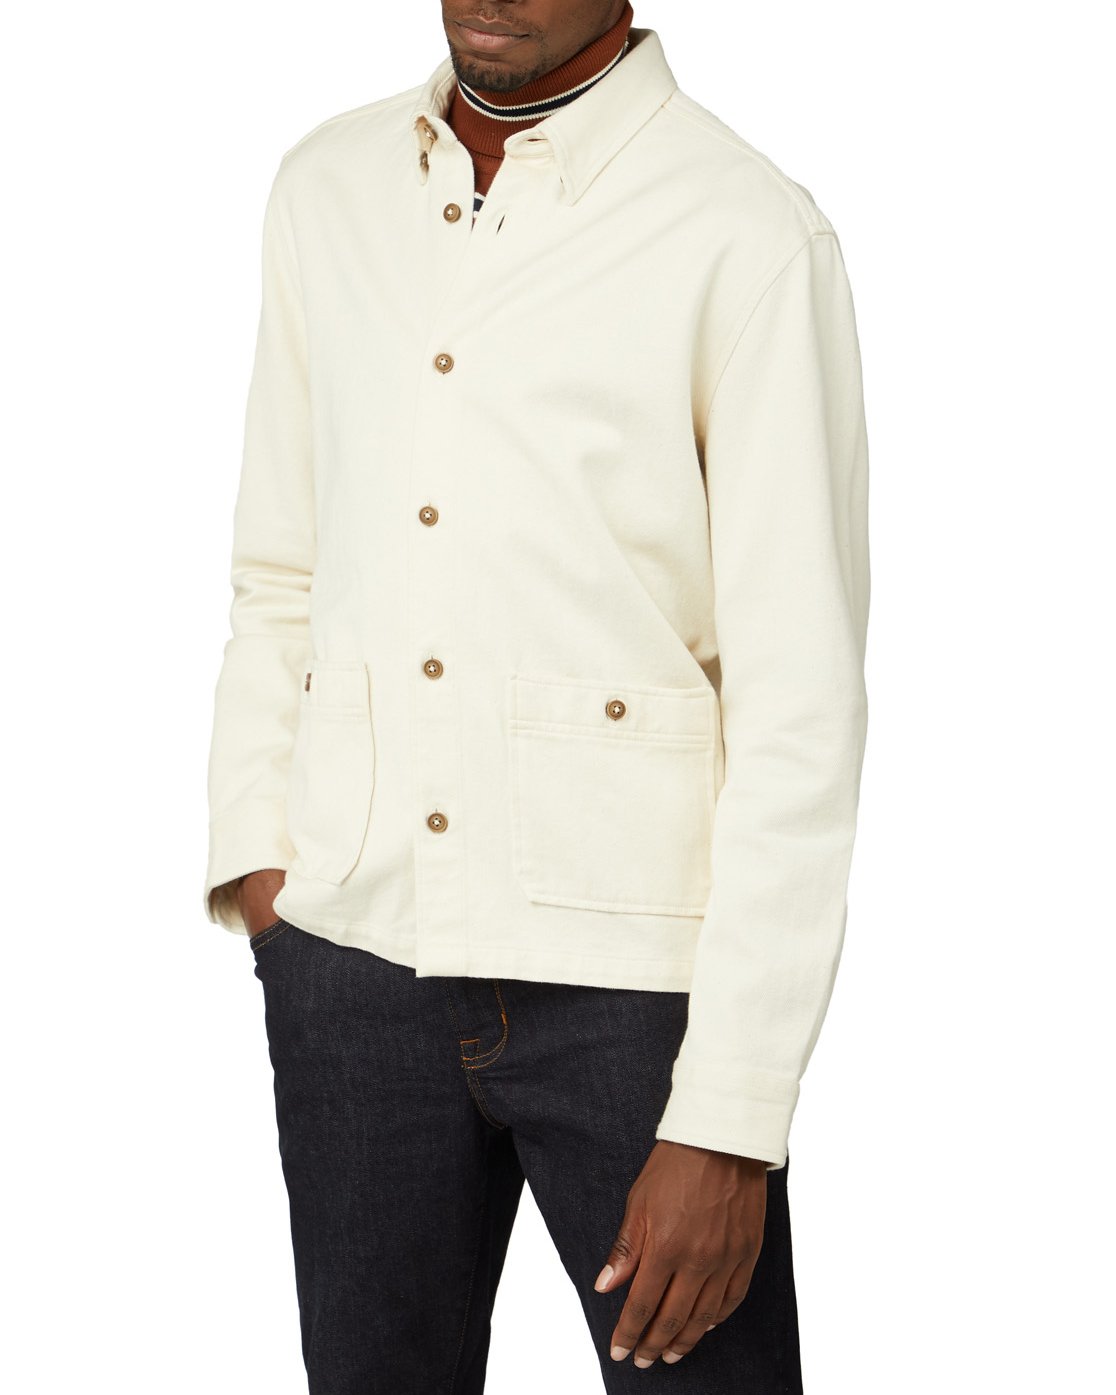 Image of Raw Cotton Chore Jacket - Ivory